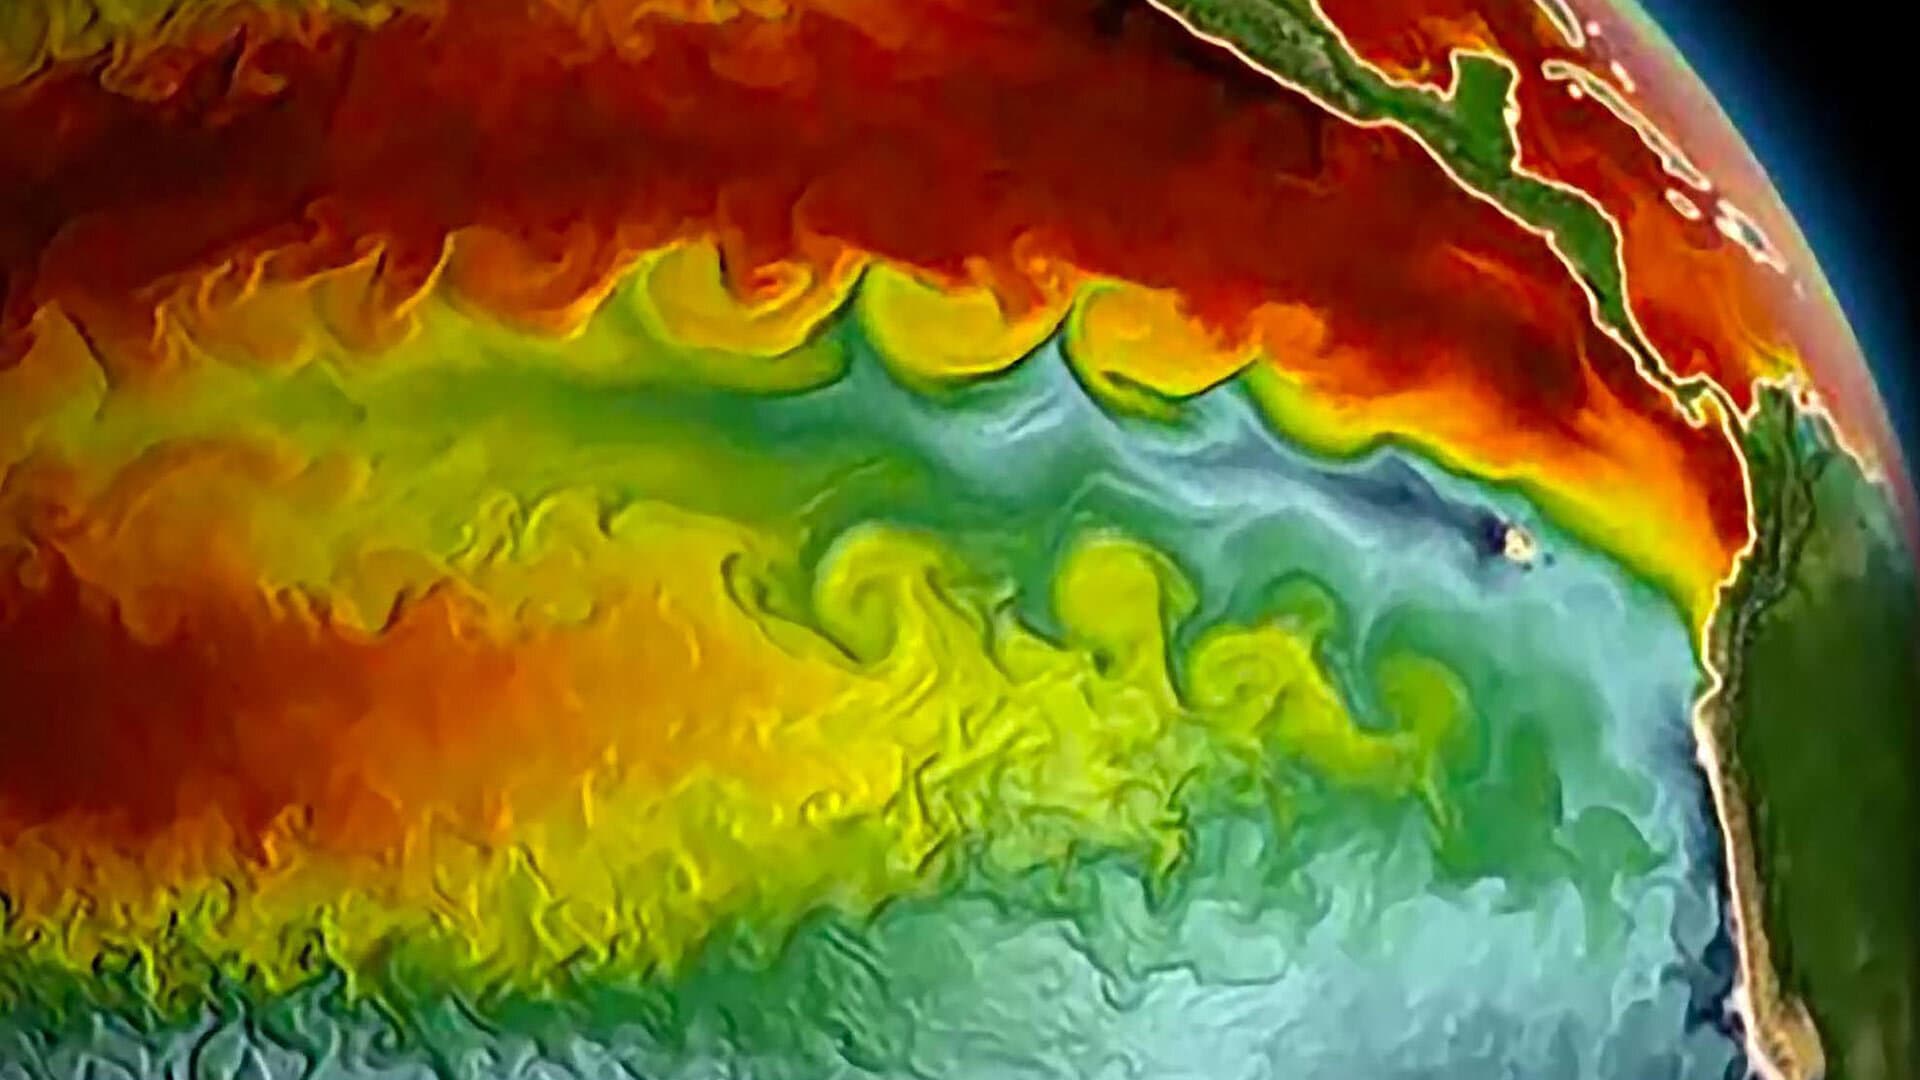 Colorful image illustrating turbulence